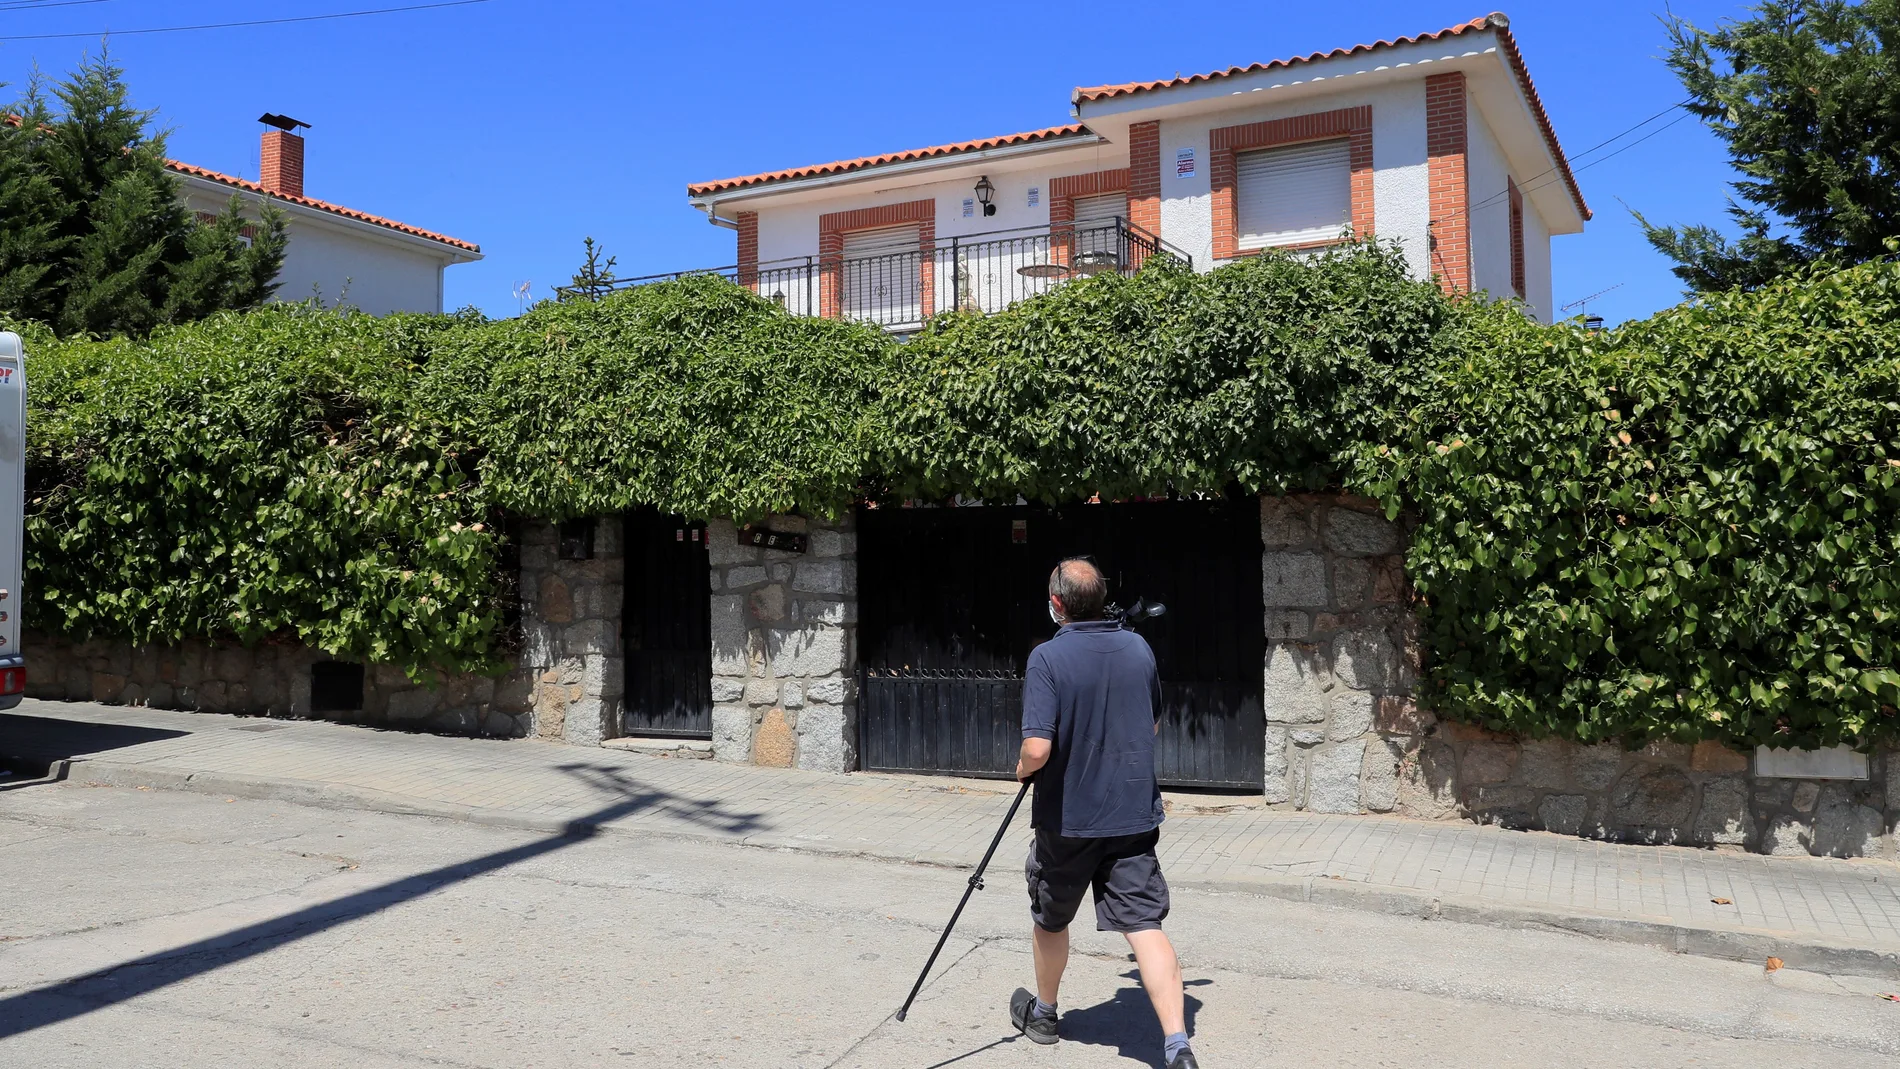 Vista de la vivienda de la mujer de 70 años cuyo cuerpo fue localizado descuartizado en la localidad madrileña de Chapinería